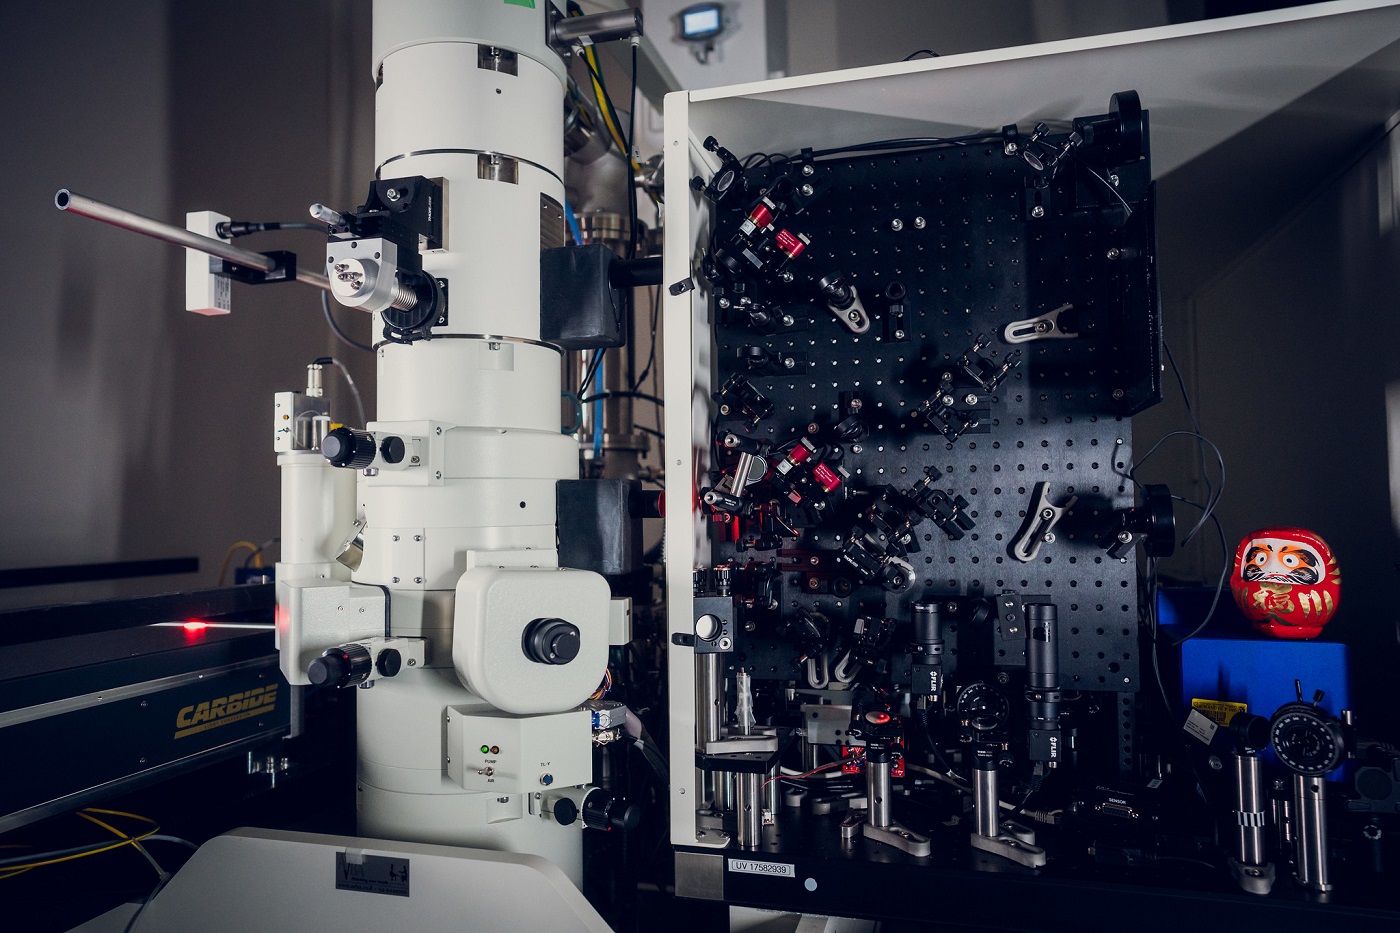 The quantum microscope